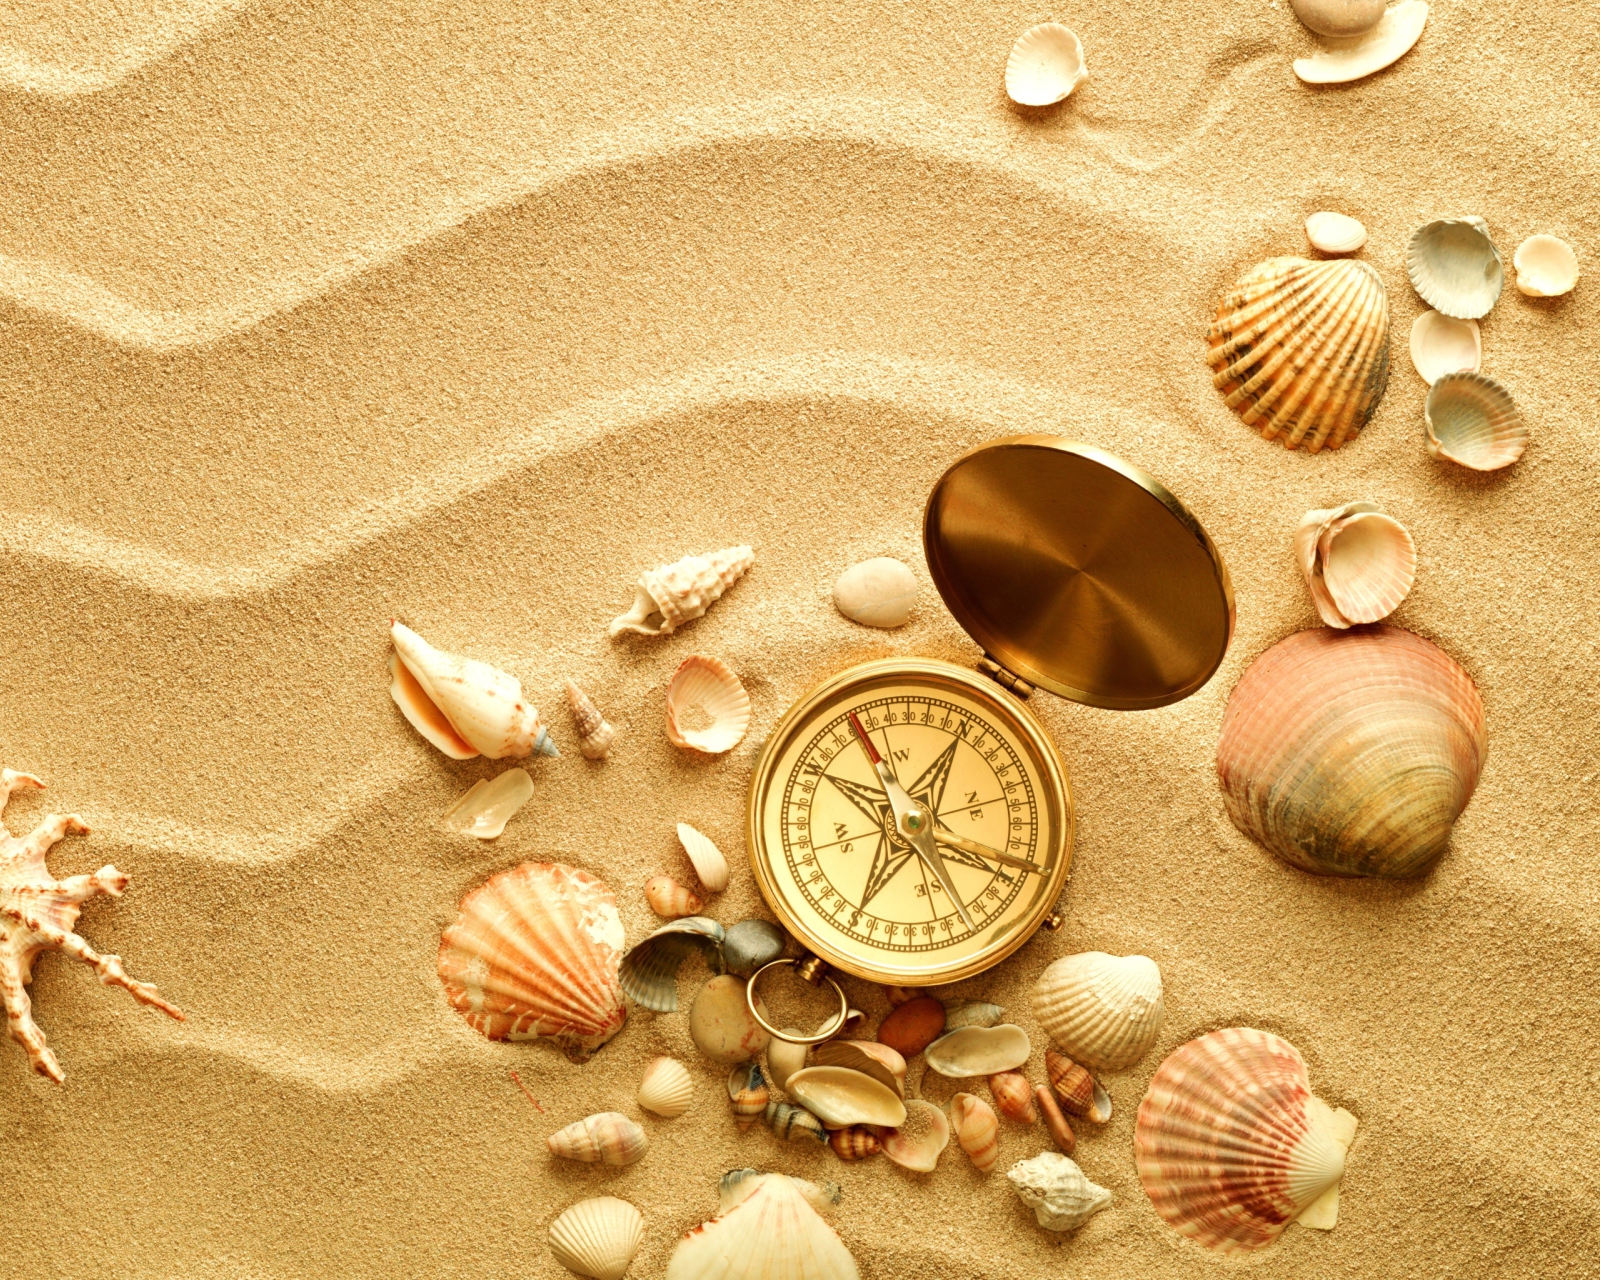 Обои Compass And Shells On Sand 1600x1280